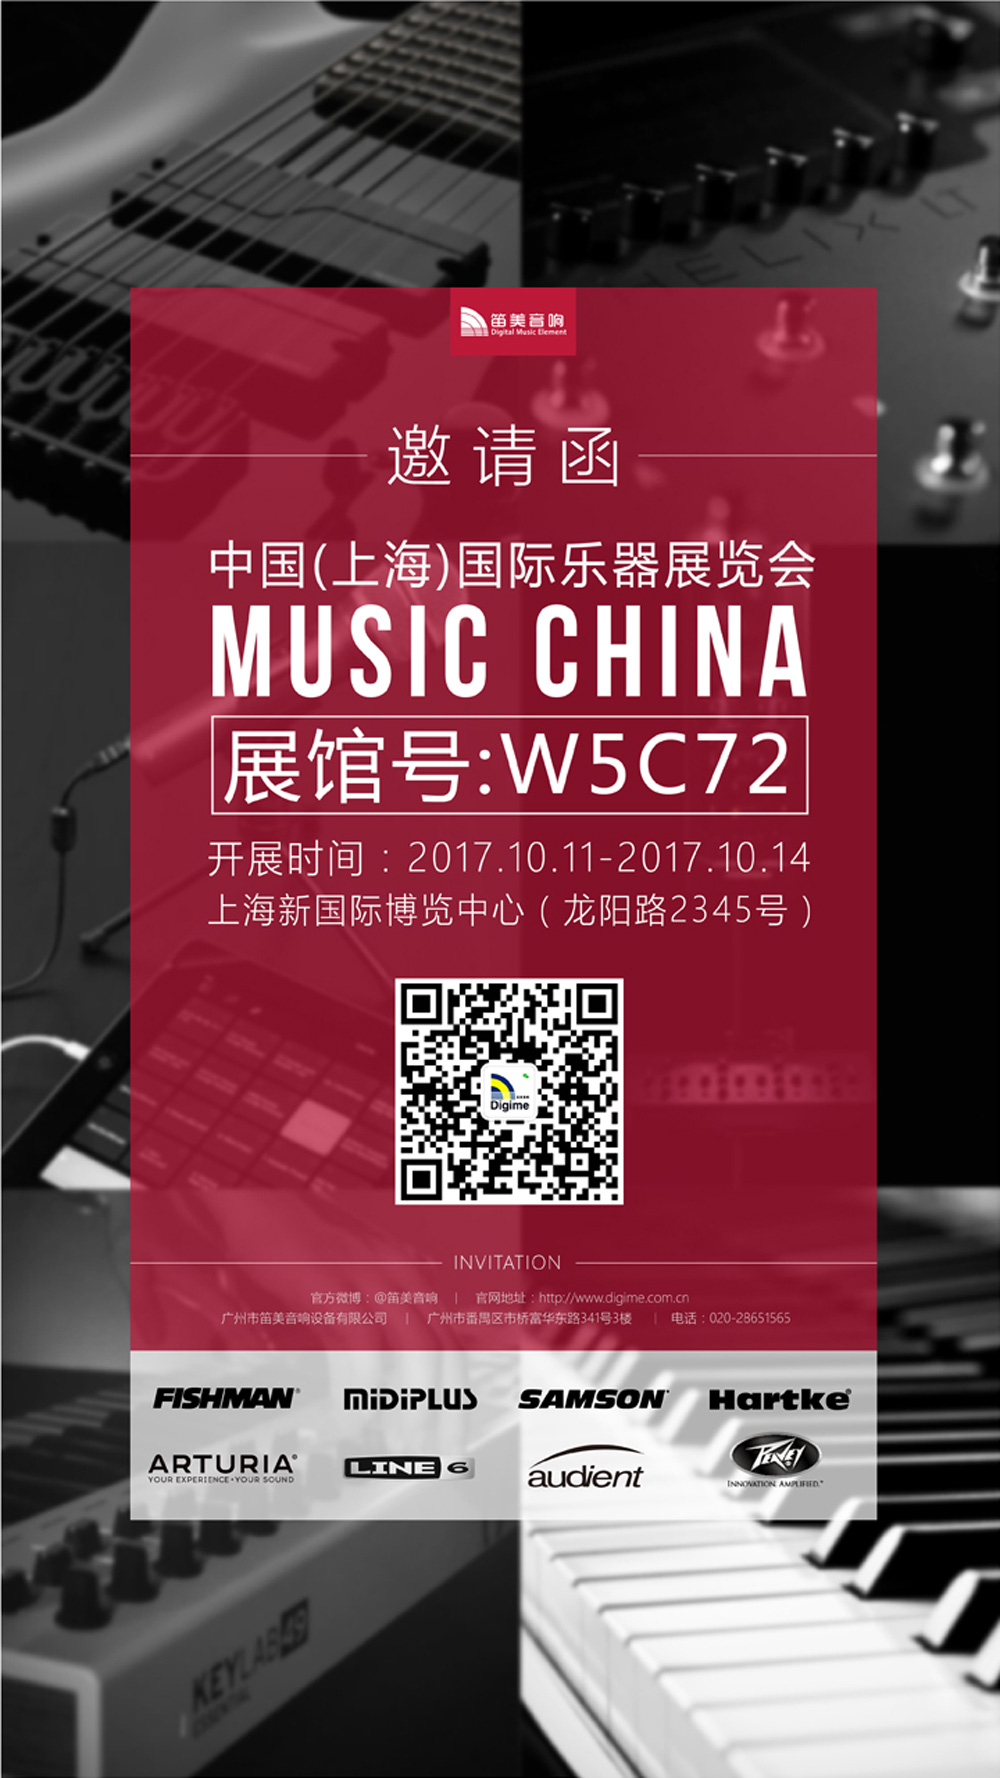 【邀请函】笛美音响邀请您参加中国（上海）国际乐器展览会